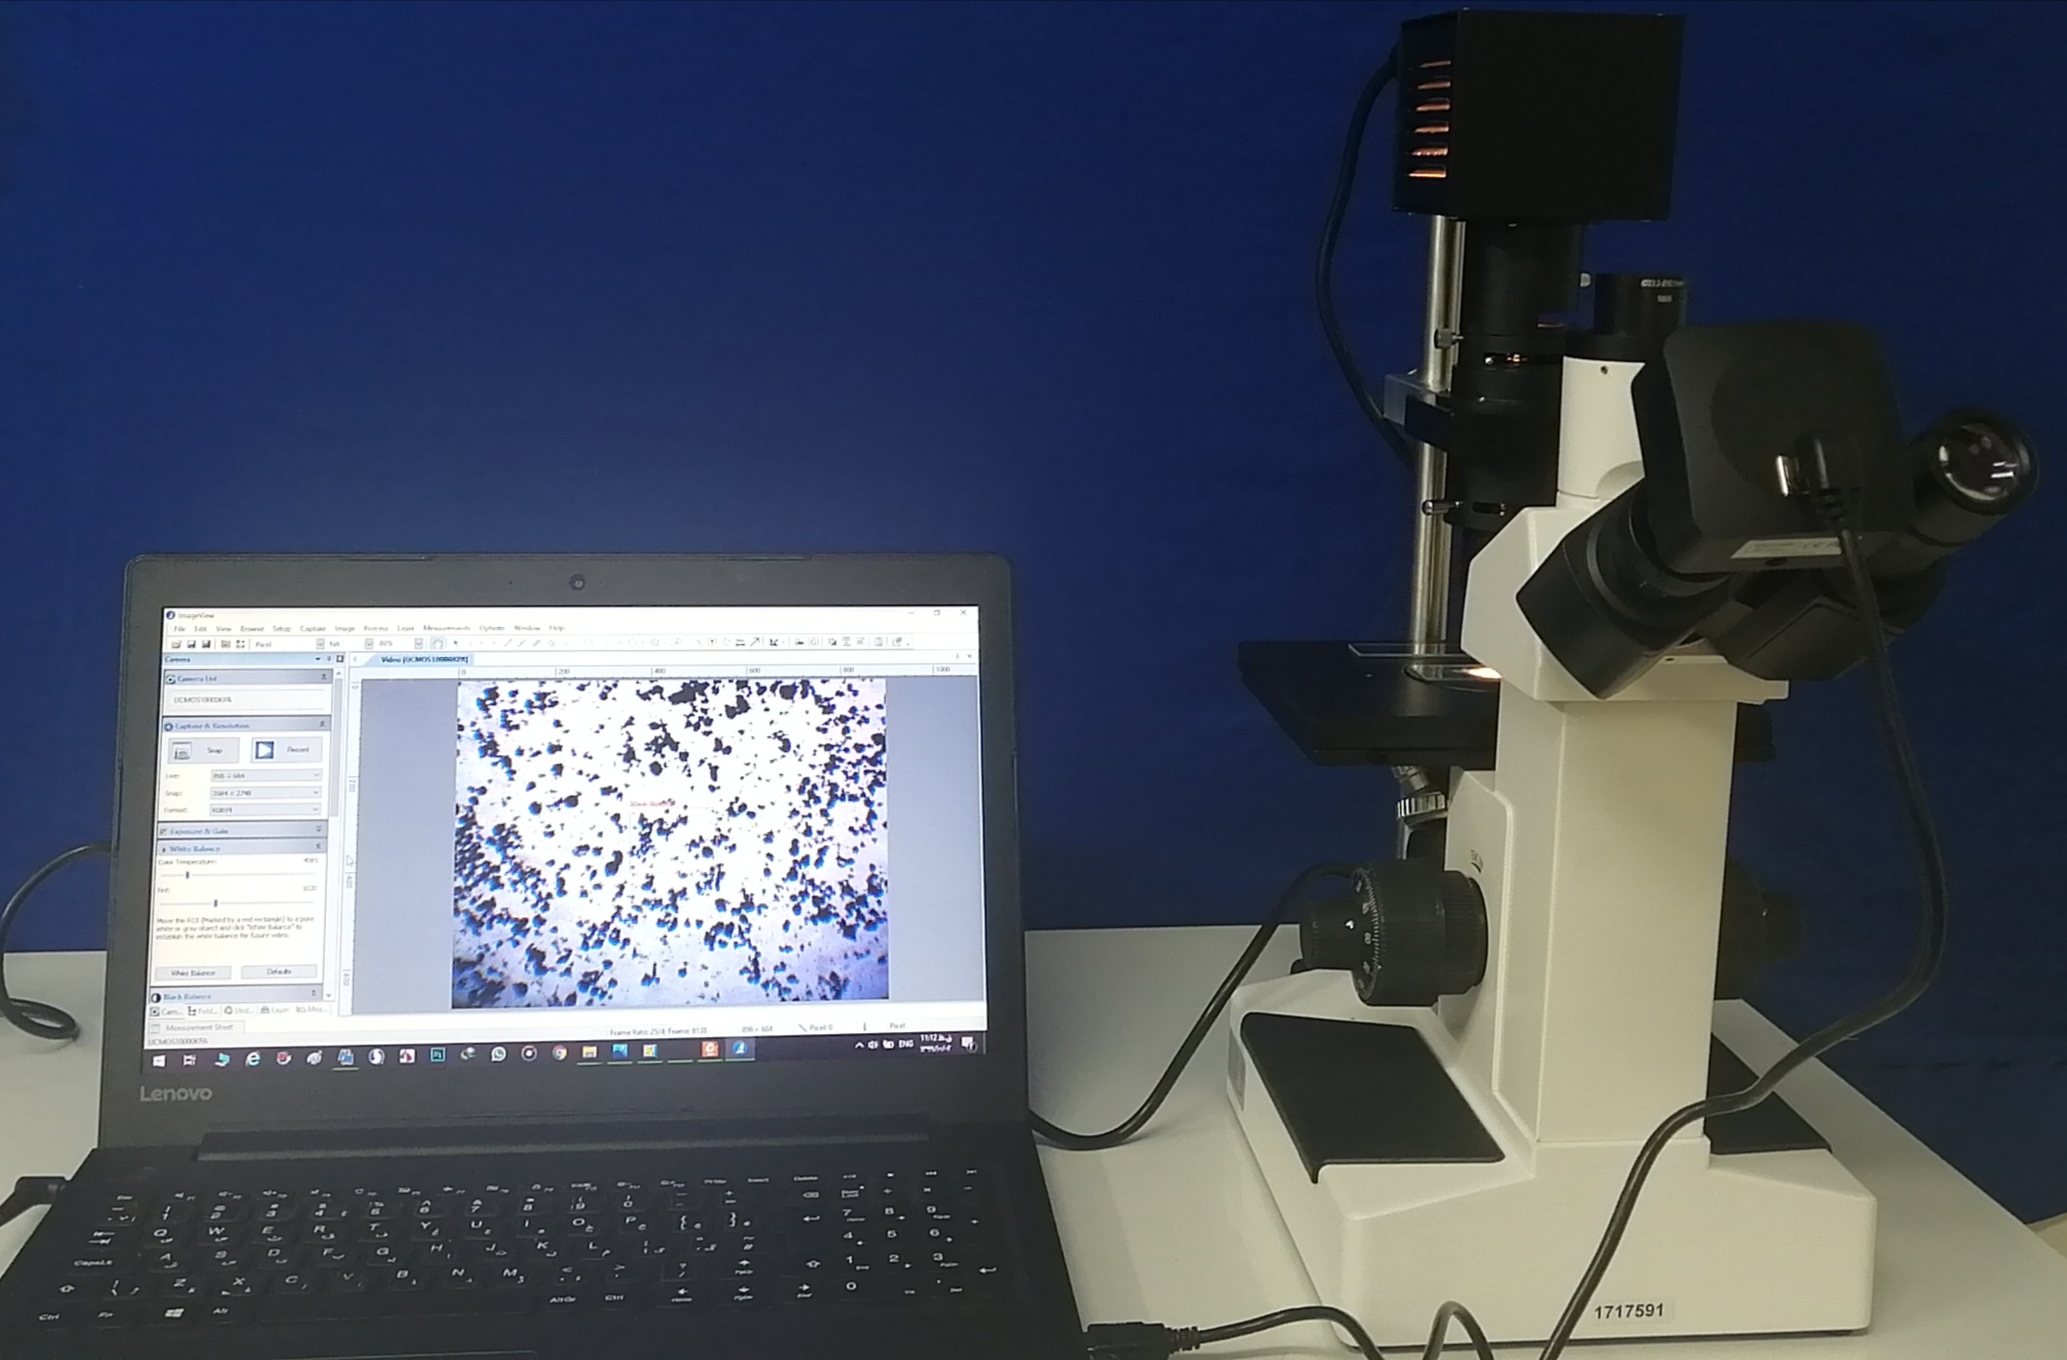 دوربین دیجیتال میکروسکوپی - digital microscope camera - چینی - دستگاه - دستگاه ها و ملزومات آزمایشگاهی - تعاونی زیست راه دانش